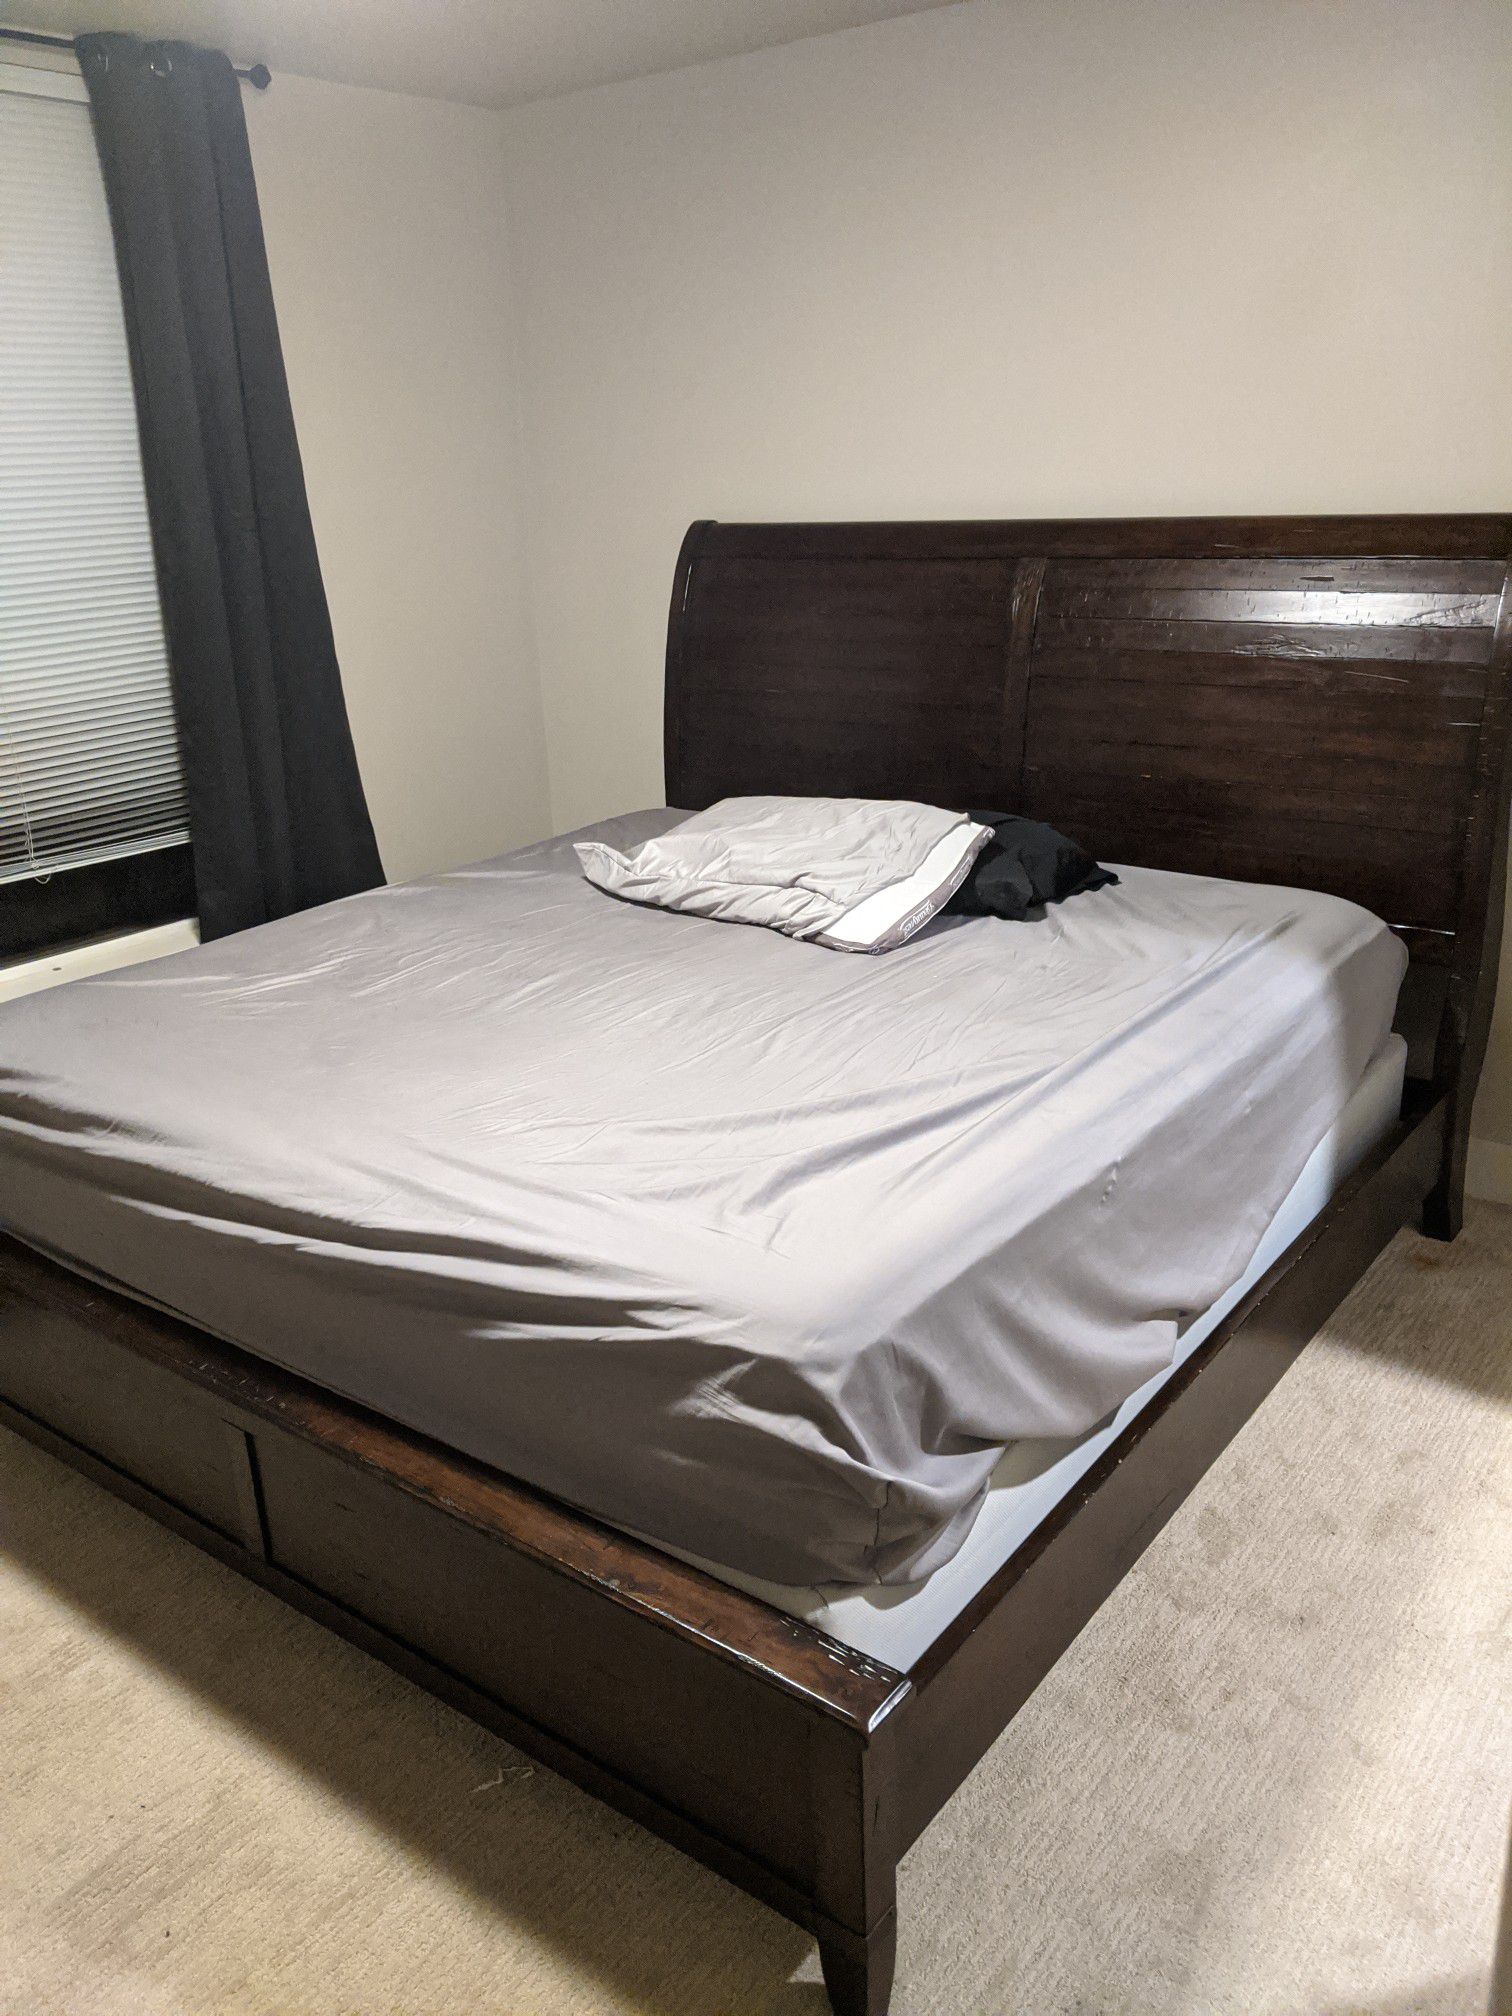 Solid wood bed frame - Cali king